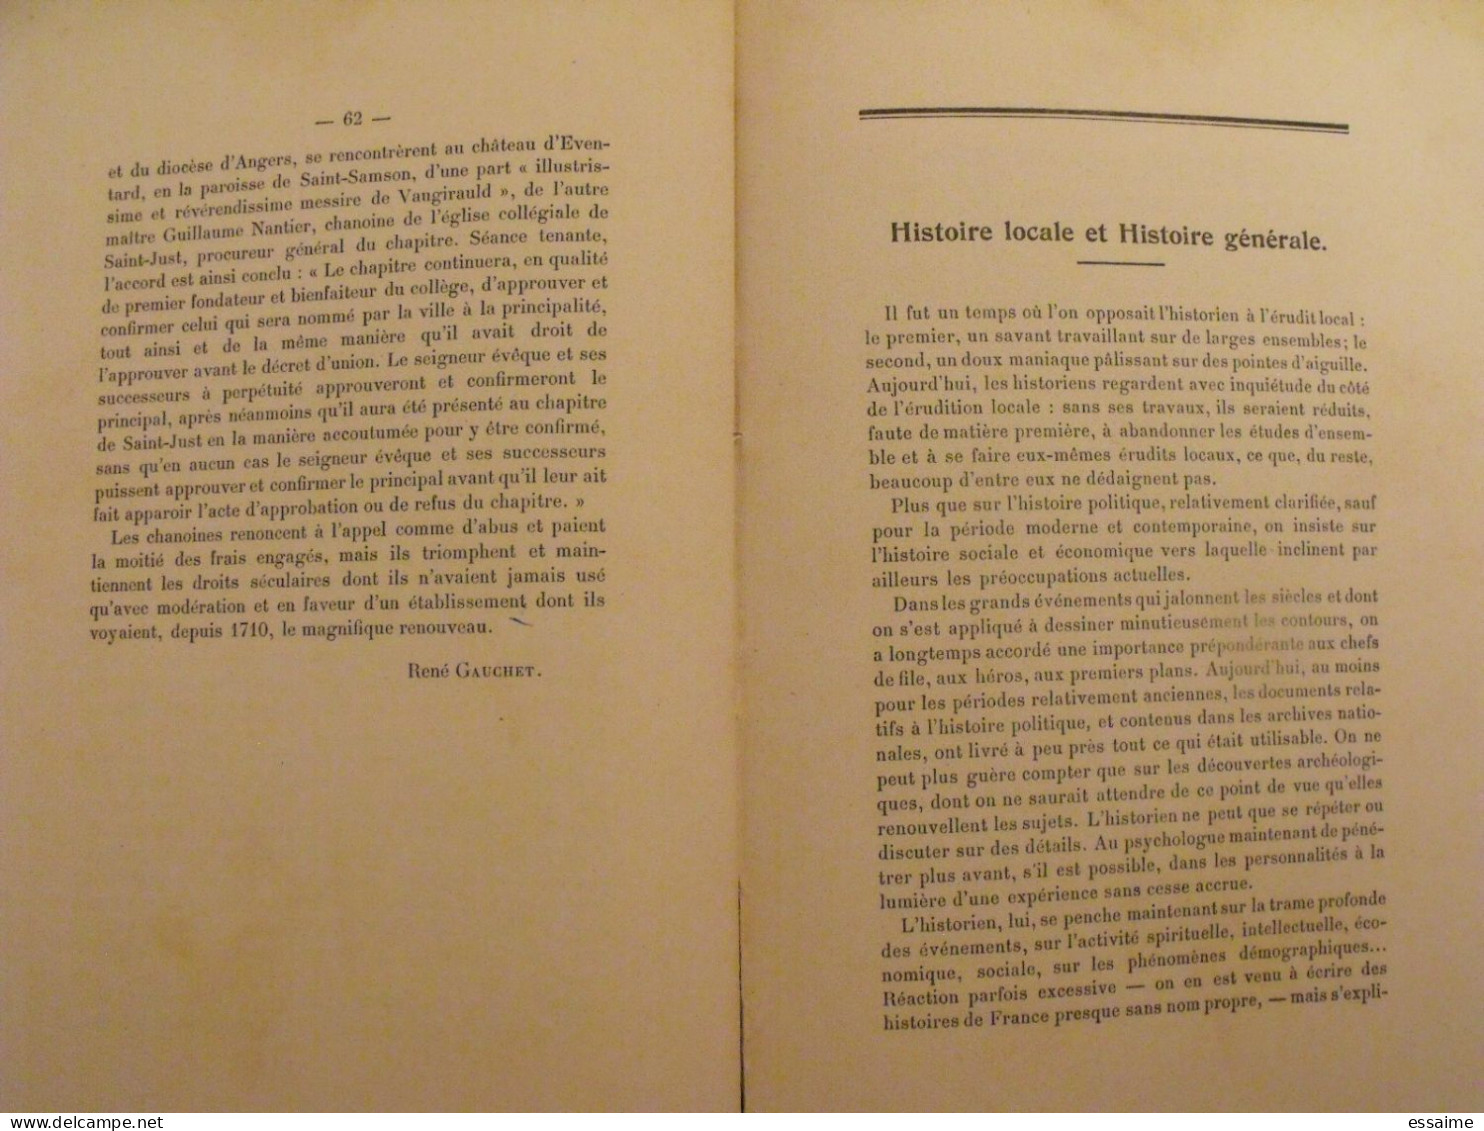 bulletin historique et archéologique de la Mayenne. 1948-52, tome LXII-226. Laval Chateau-Gontier. Goupil.